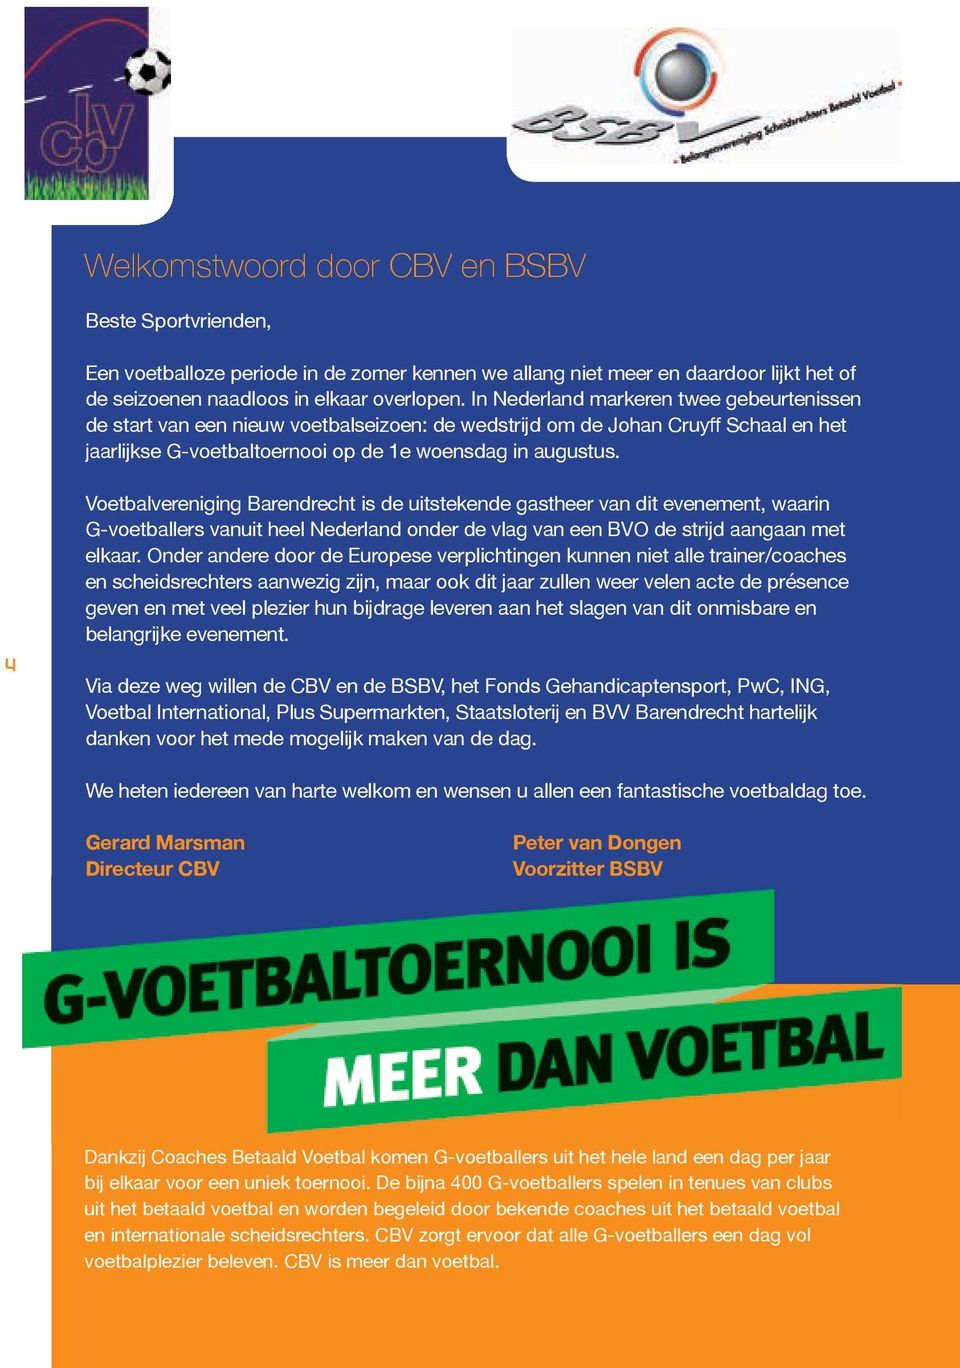 4 Voetbalvereniging Barendrecht is de uitstekende gastheer van dit evenement, waarin G-voetballers vanuit heel Nederland onder de vlag van een BVO de strijd aangaan met elkaar.